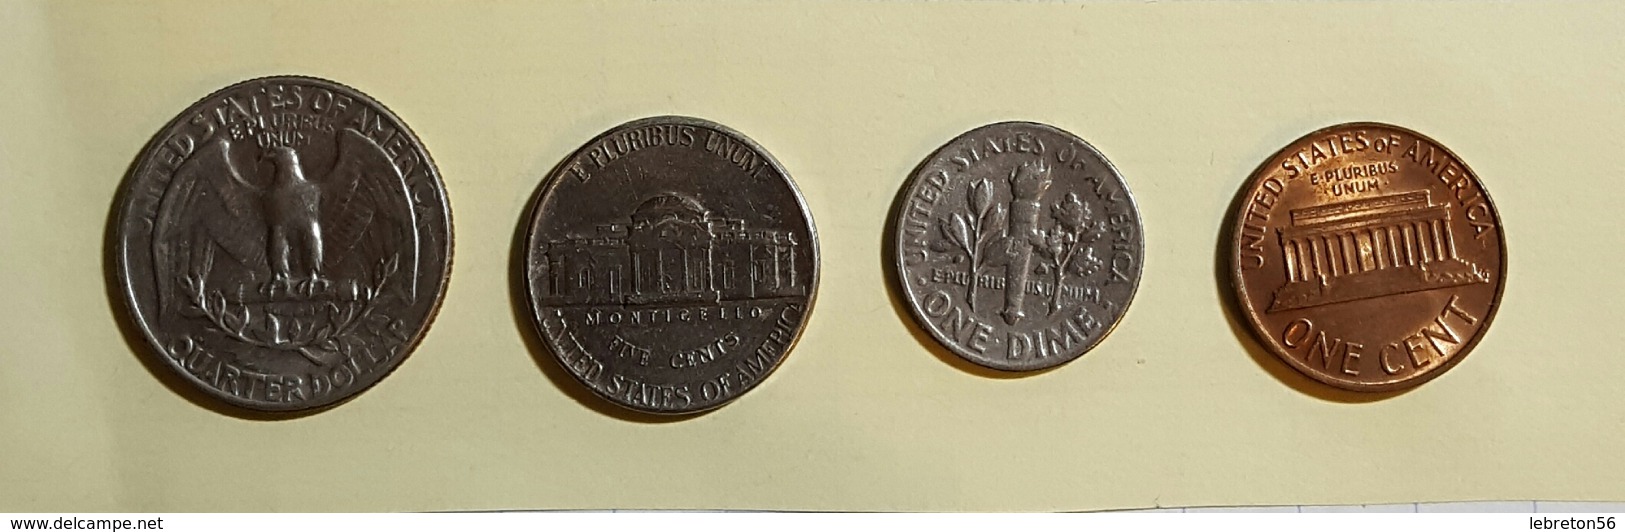 Etats Unis Quater Dollards 1967 Five Cent 1972 One Dime 1966 On Cent1976 Voir Les Deux Photos - Lots & Kiloware - Coins